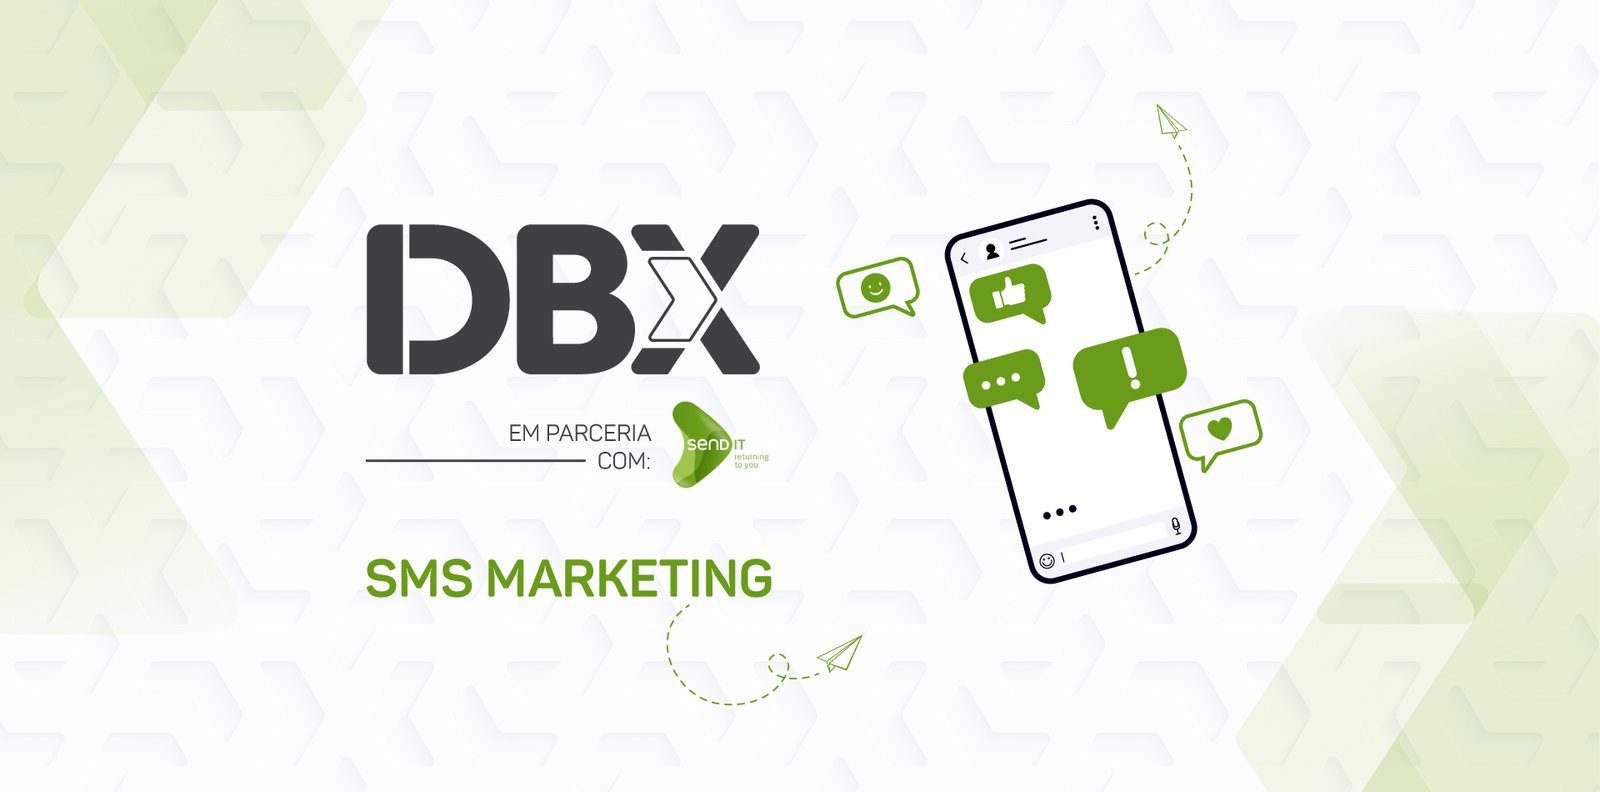 dbx-sms-marketing